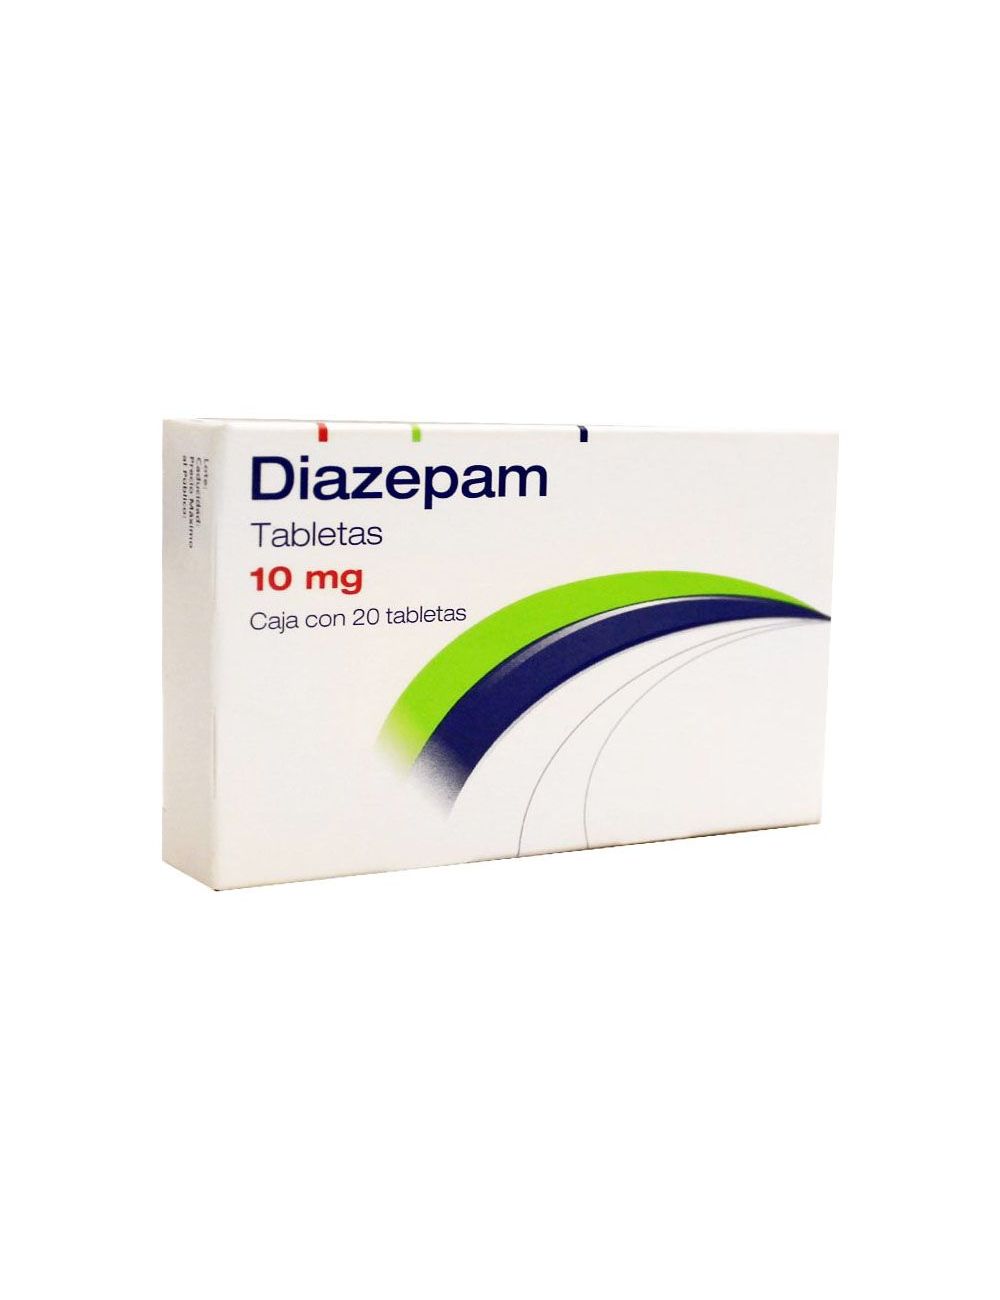 Precio Diazepam 10 mg 20 tabletas | Farmalisto MX